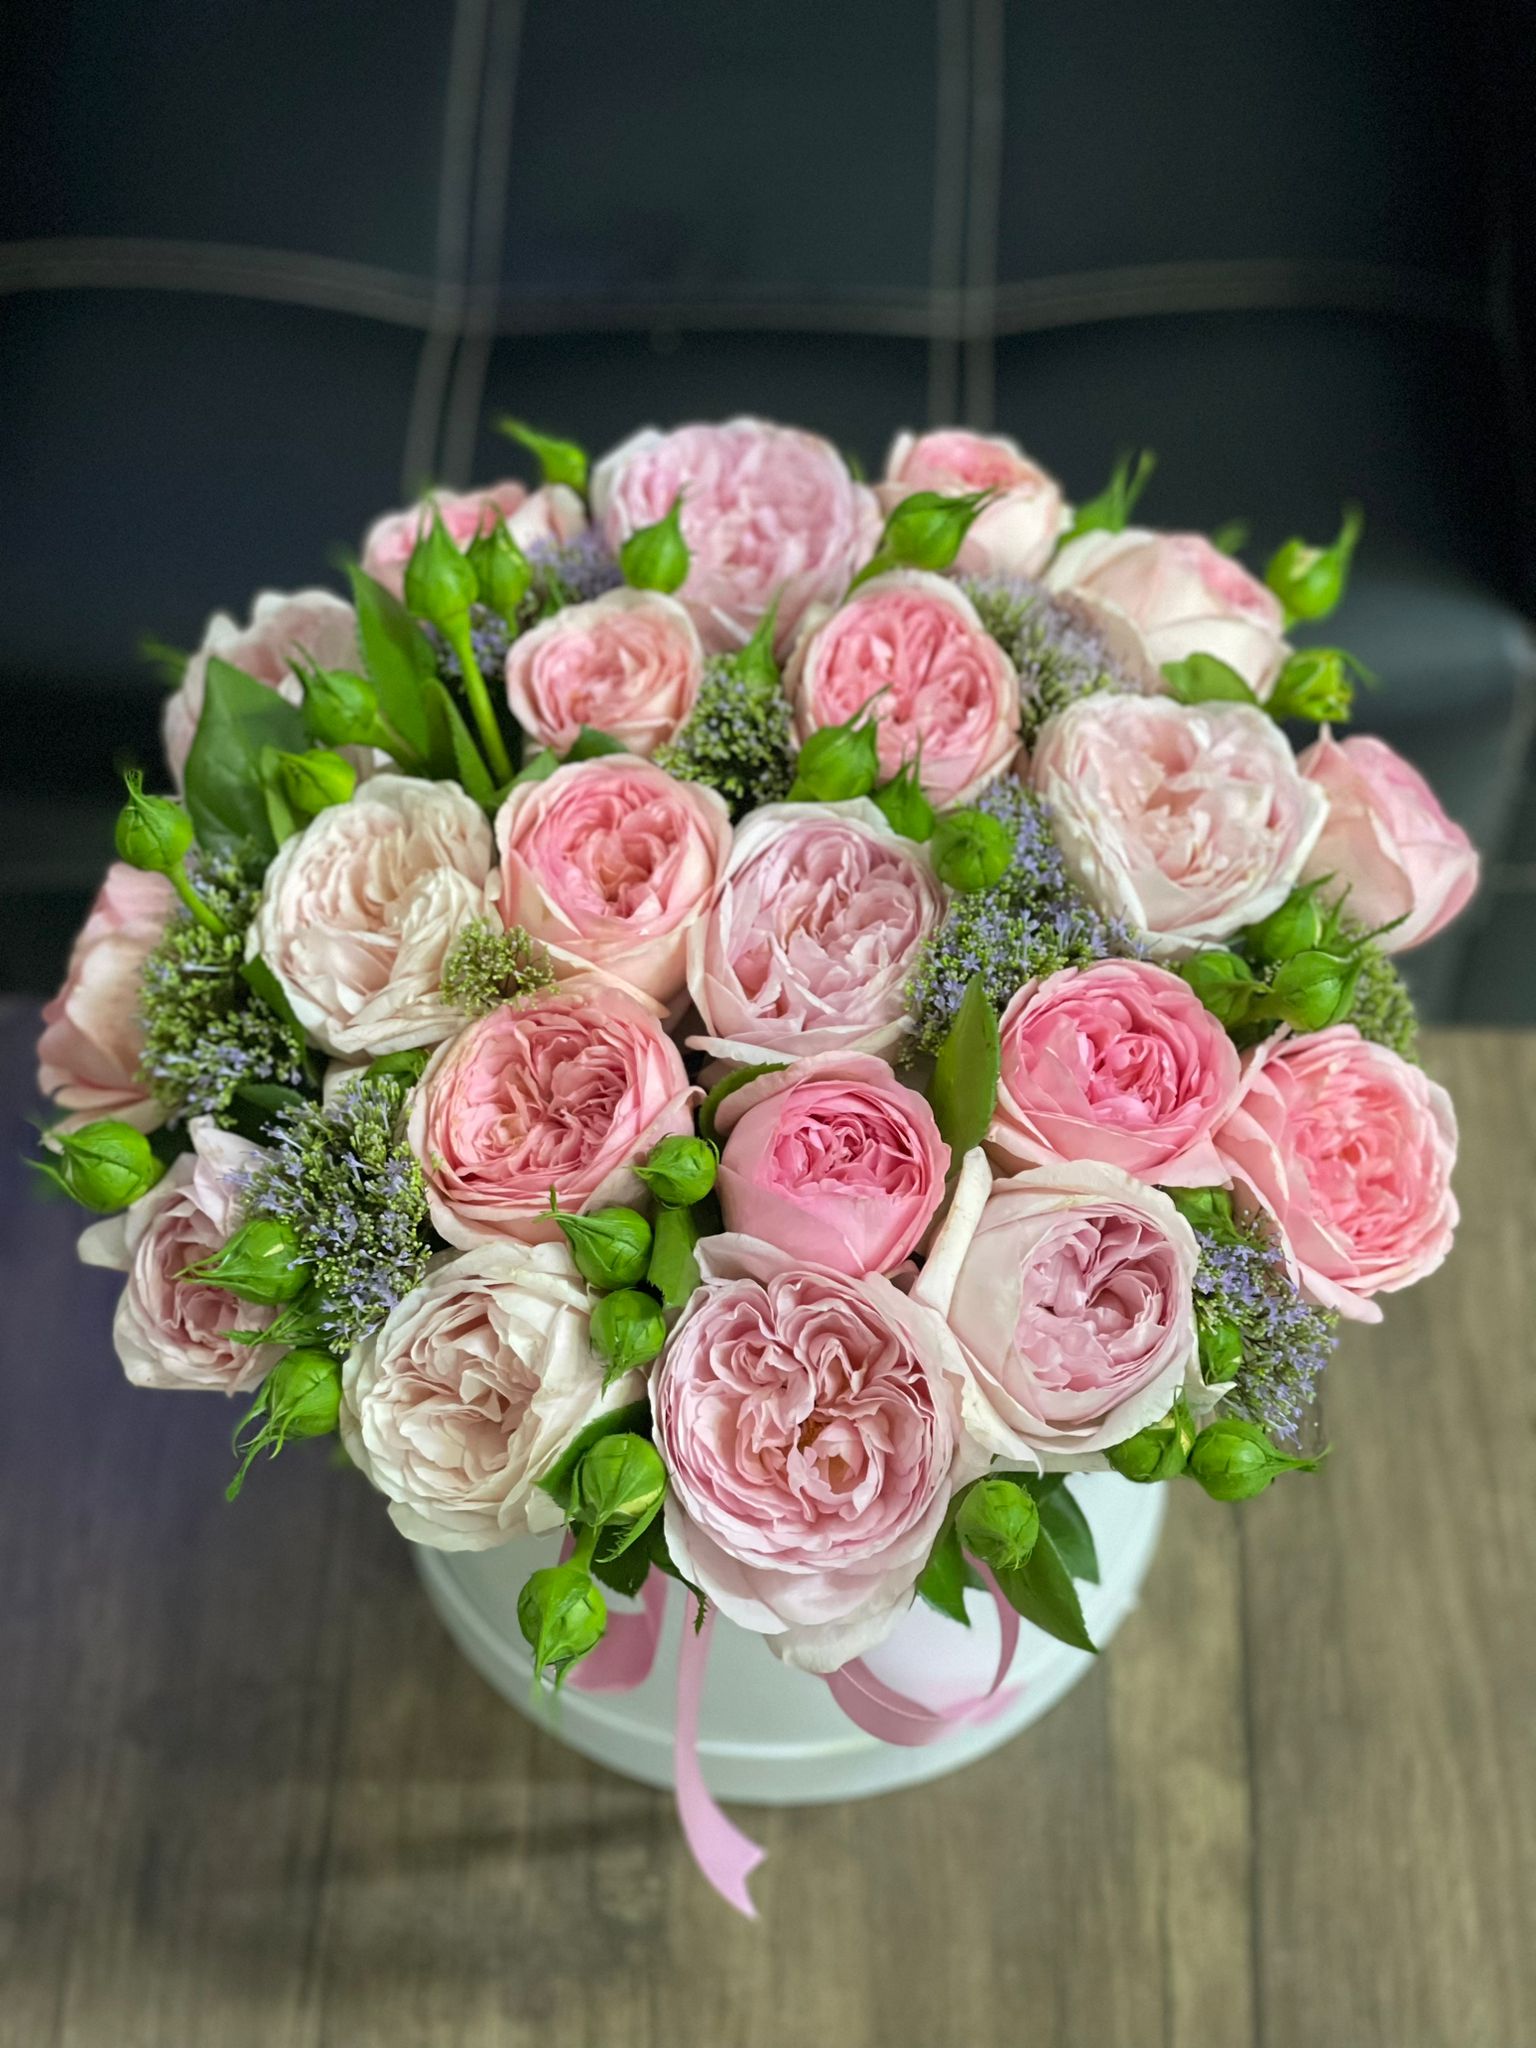  Kemer Blumenbestellung 21 Stück Pion-Rosen in einer weißen Box